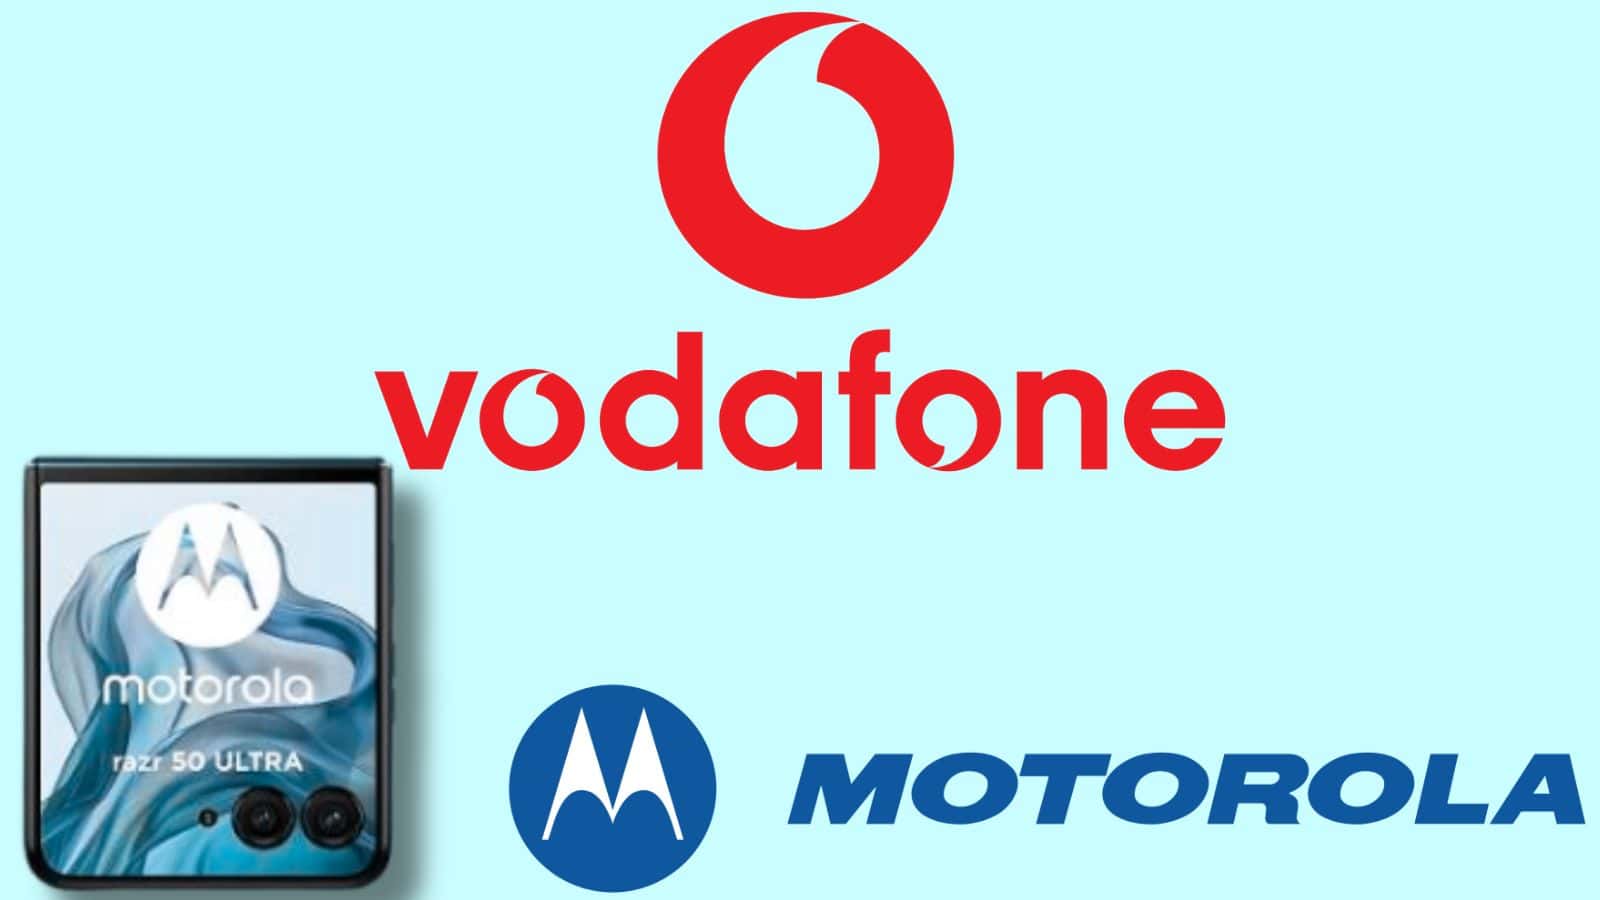 Con Vodafone puoi ottenere a rate il nuovo Motorola Razr 50 Ultra